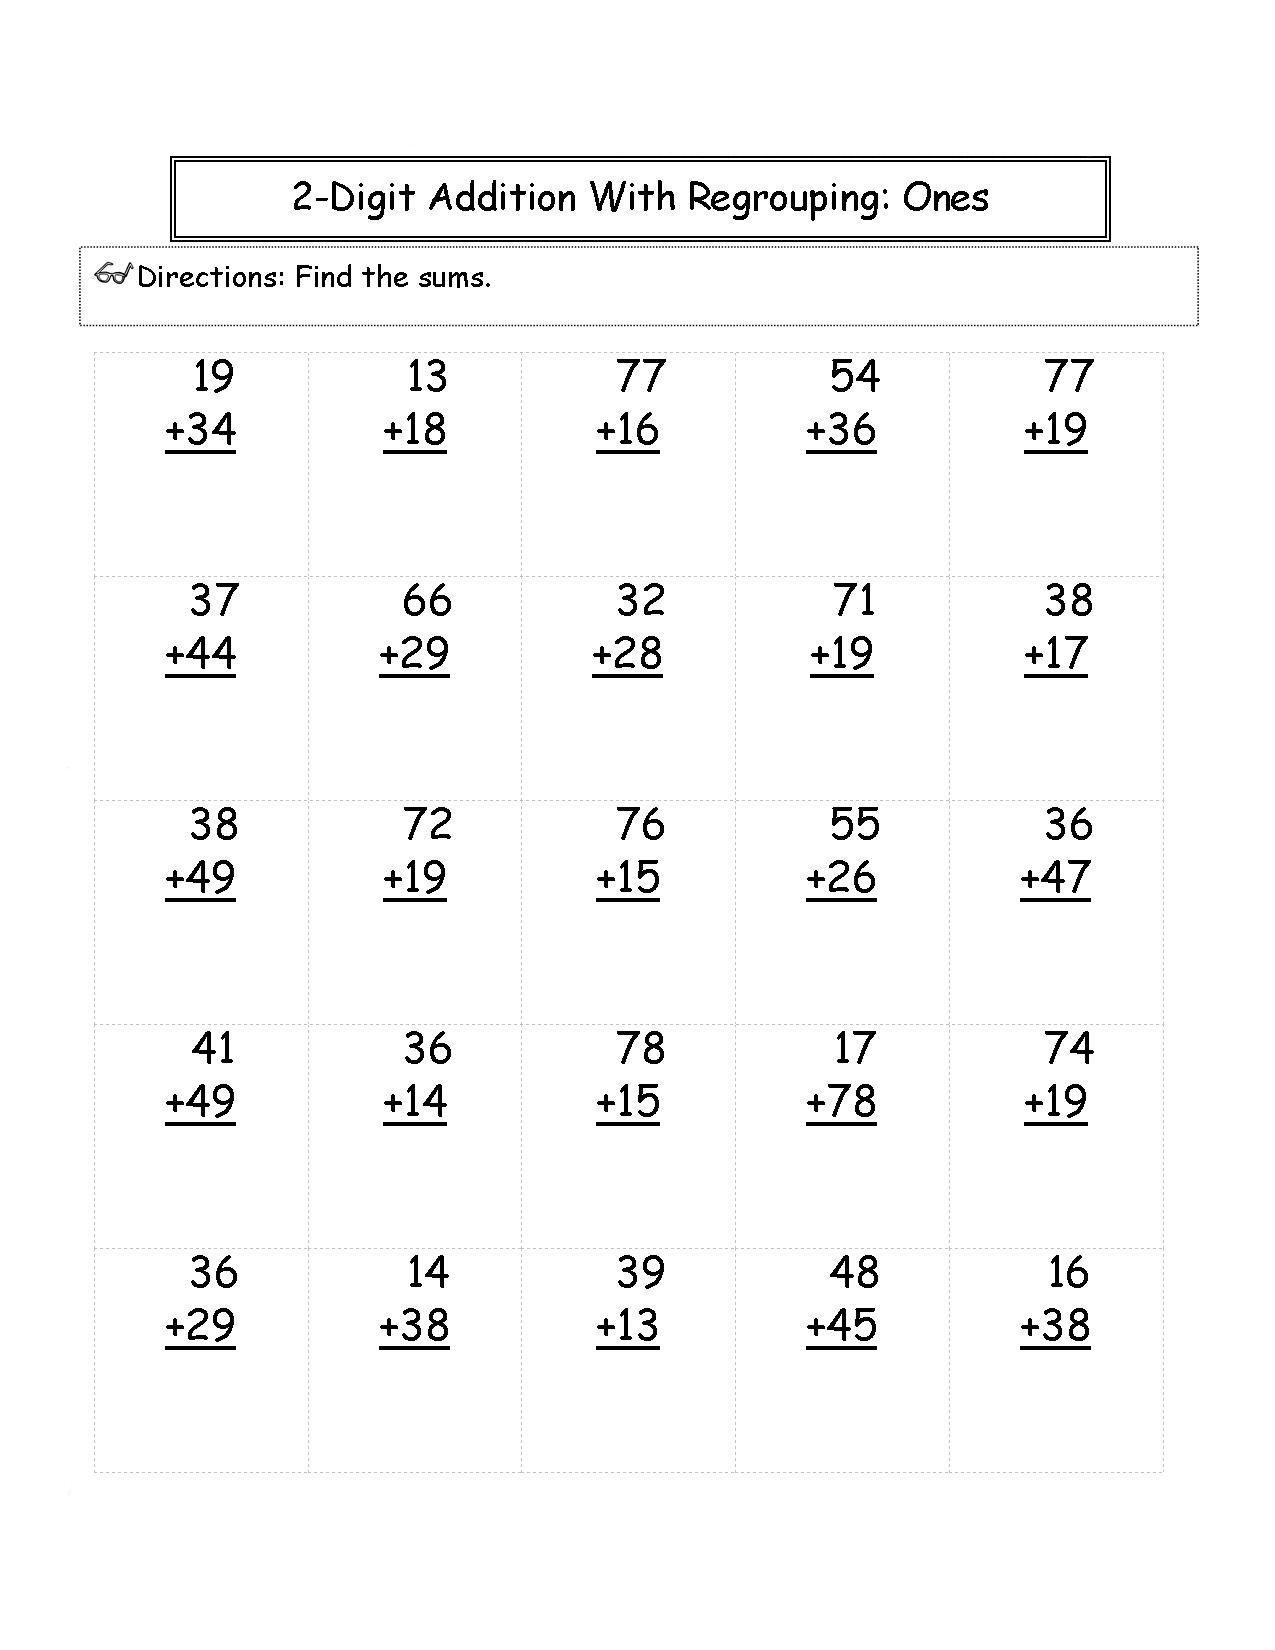 24nd Grade Math Worksheets - Best Coloring Pages For Kids Regarding 2nd Grade Fractions Worksheet